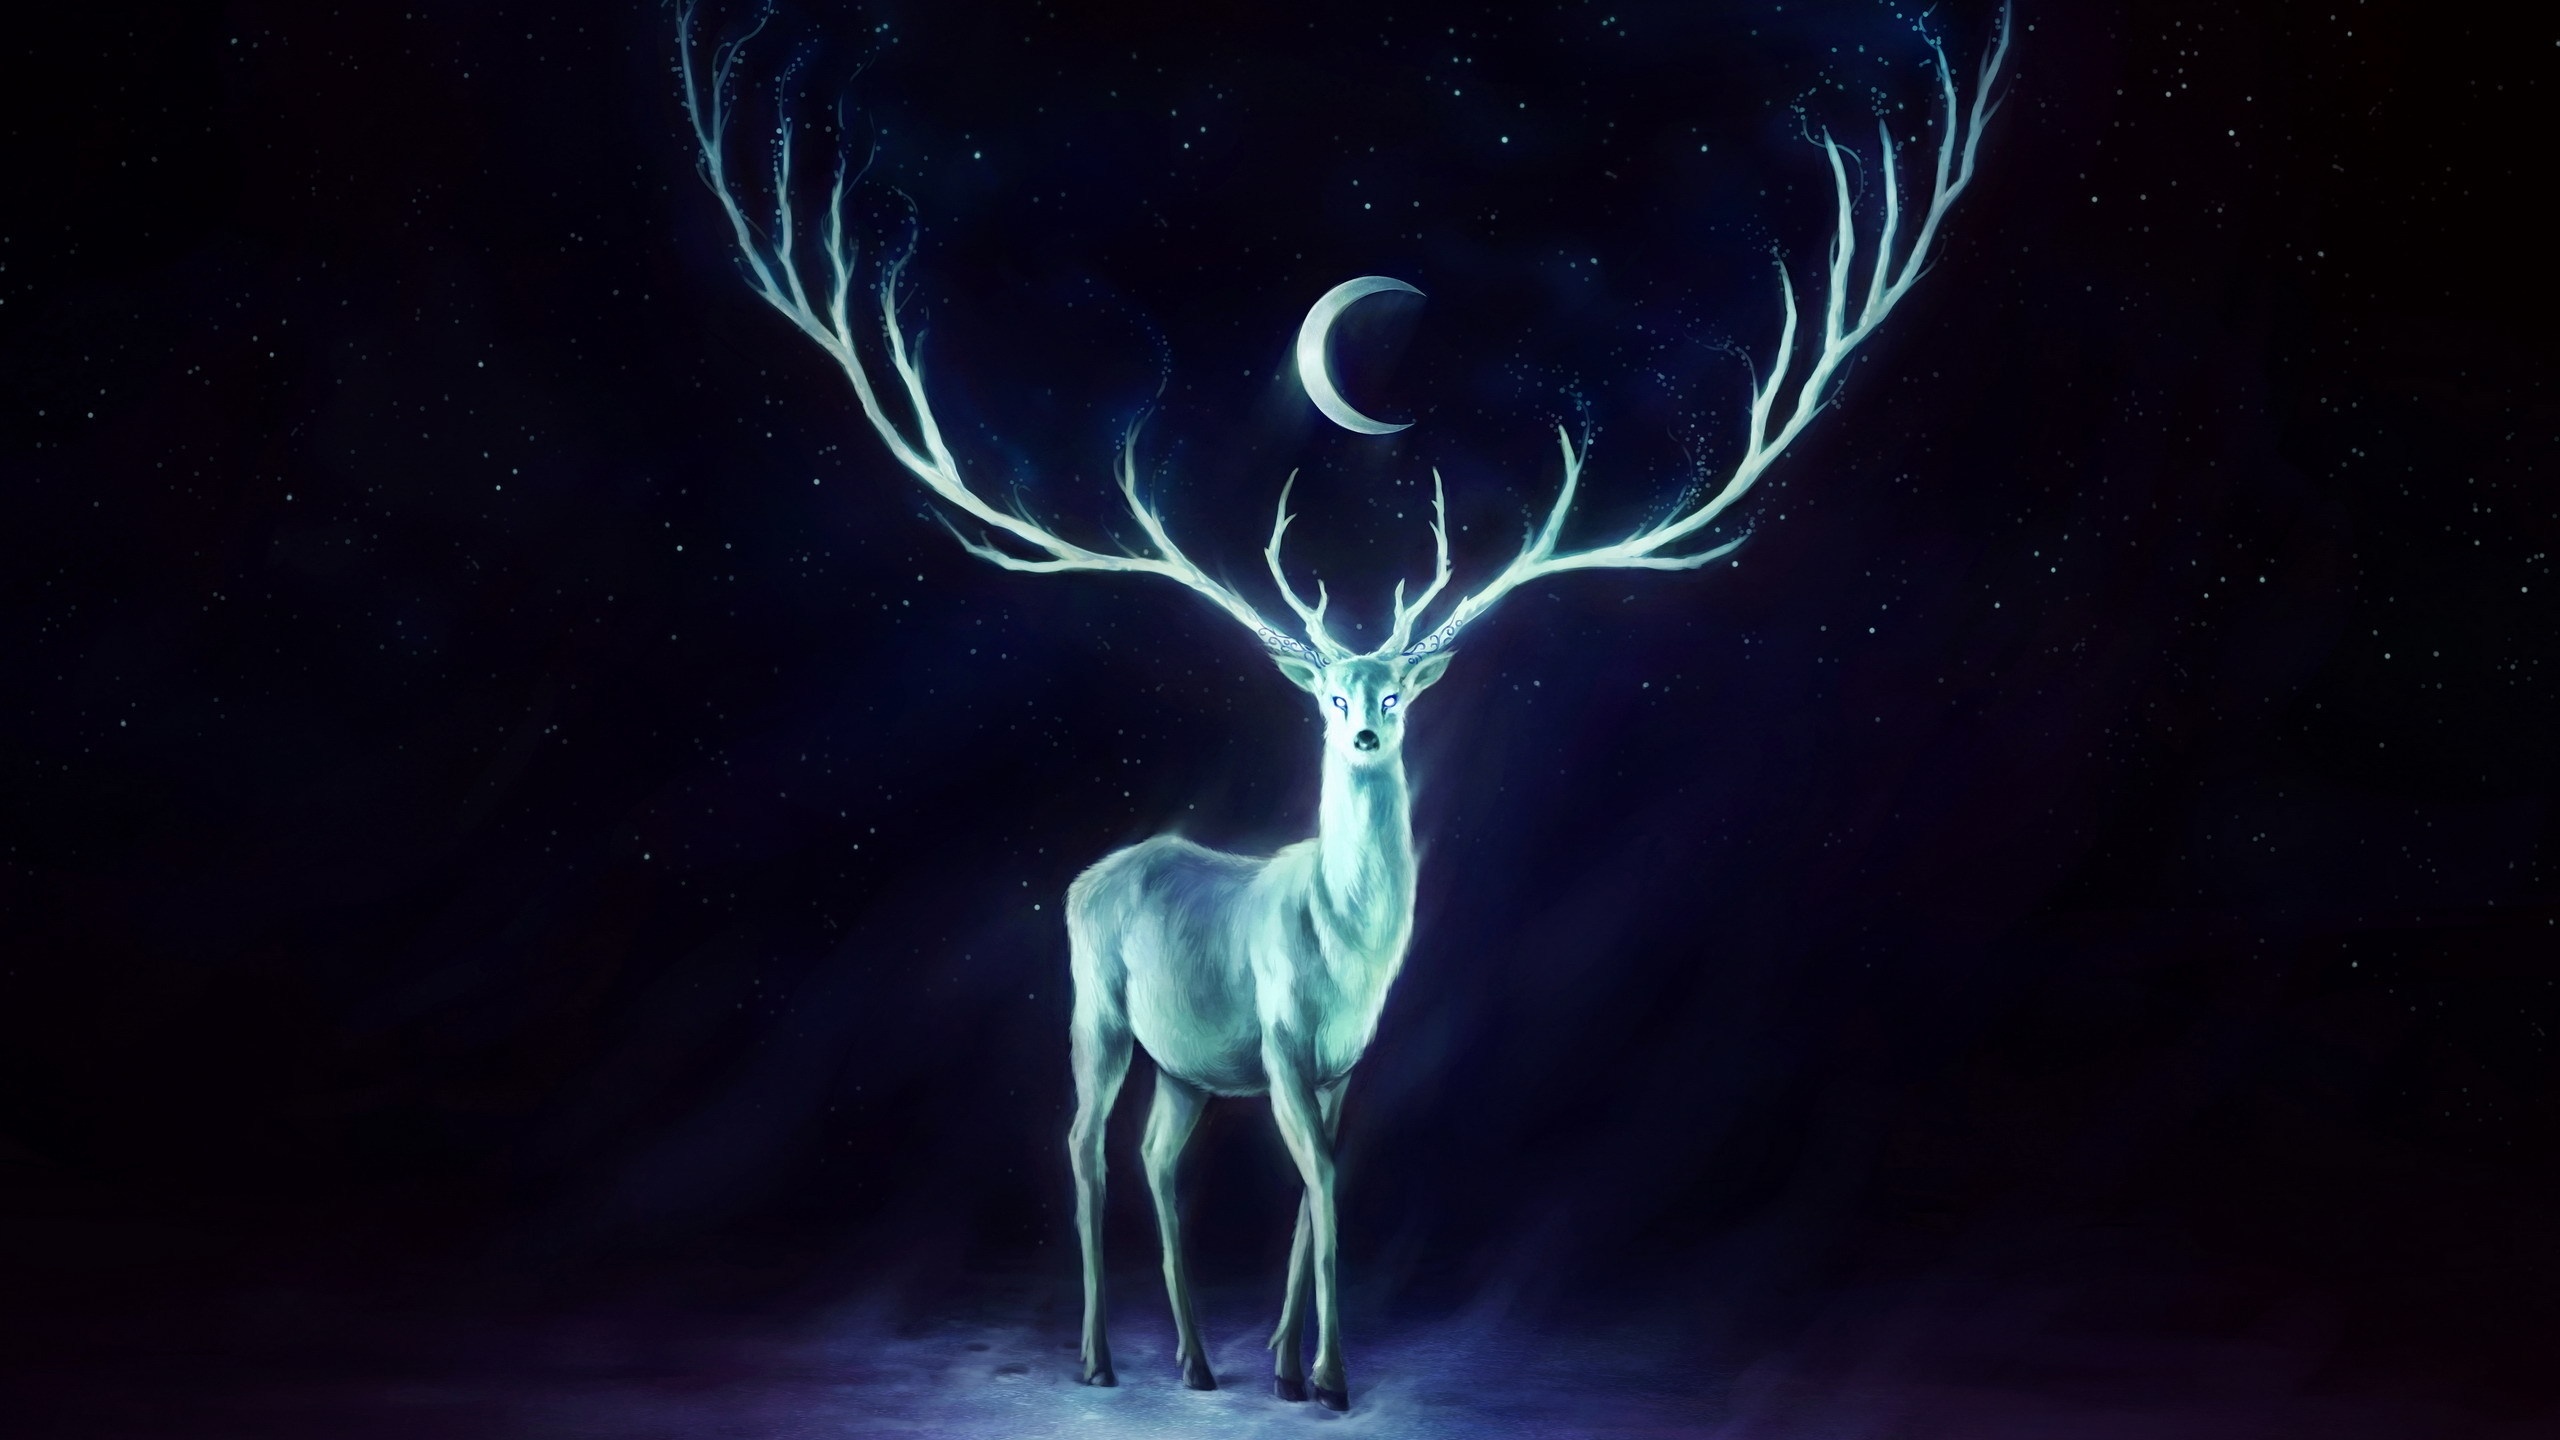 Fantasy Deer Art by Jonas Jödicke